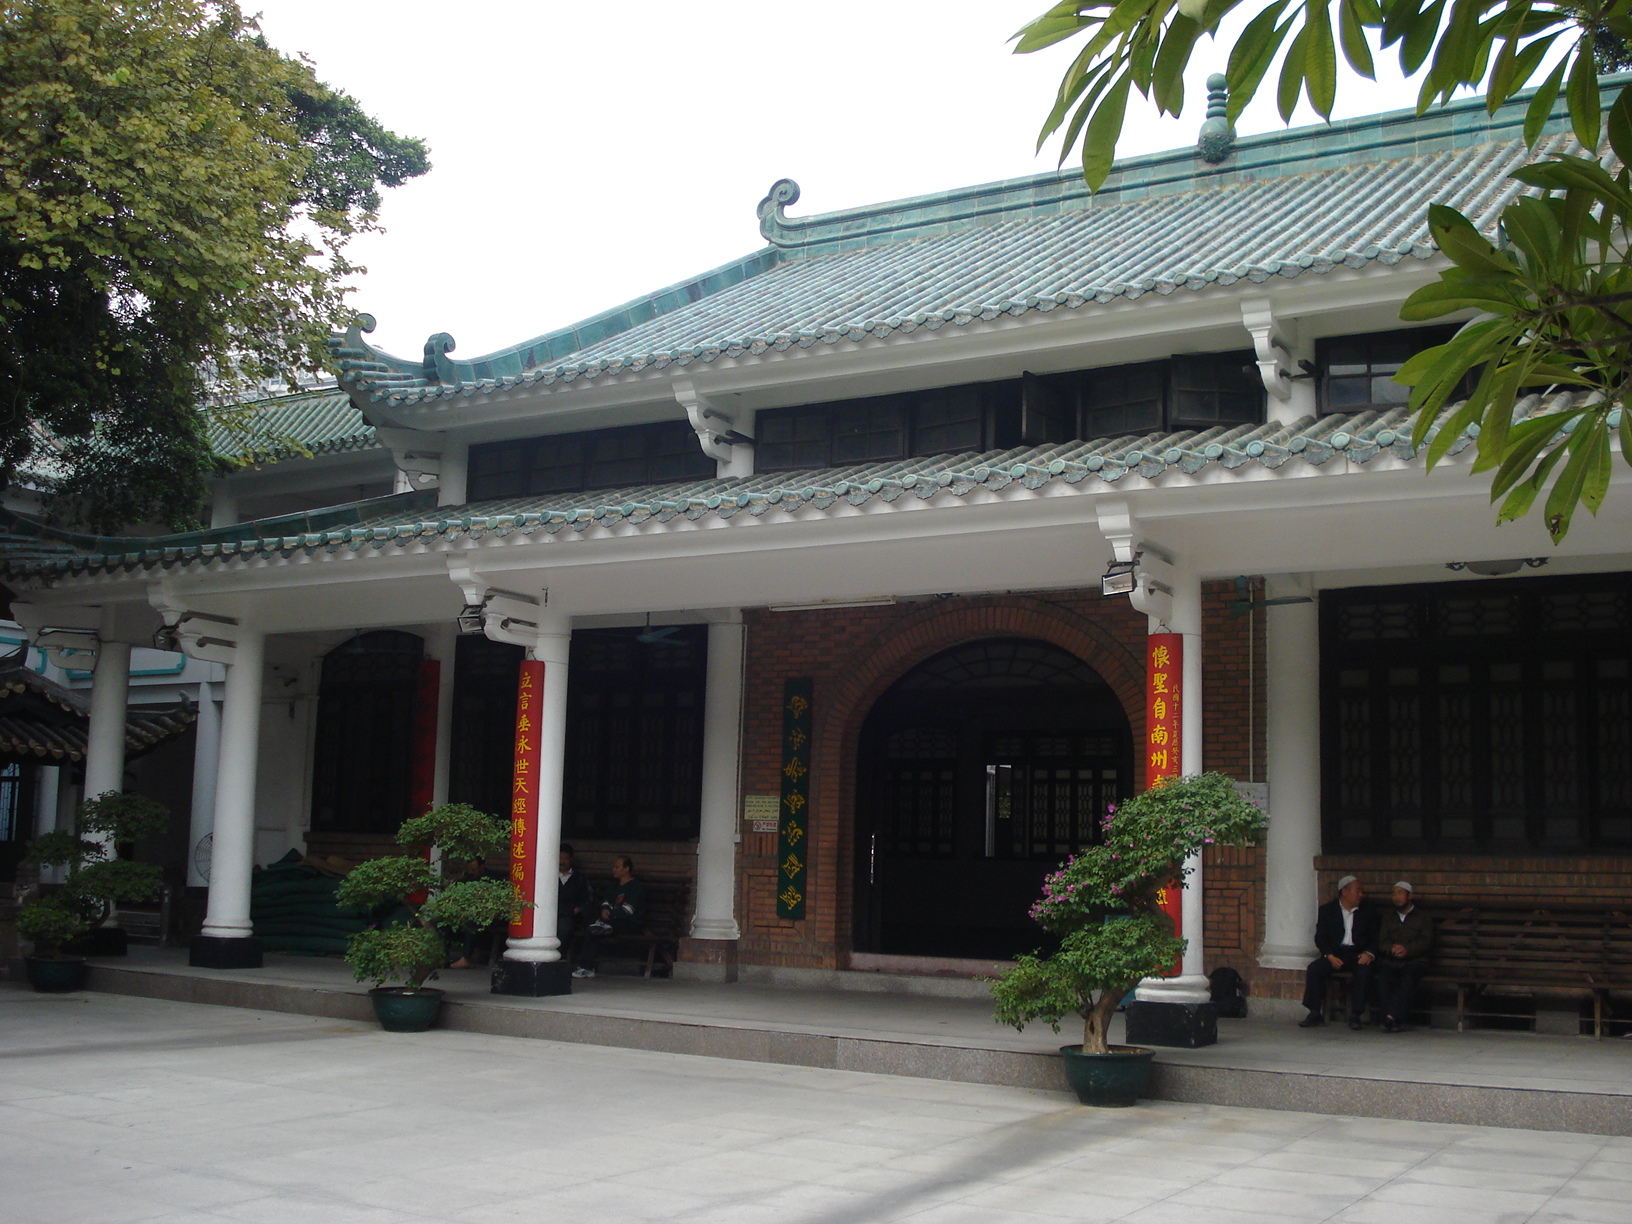 يقع مسجد "هوايشنغ" (الحنين إلى النبي) في الحي القديم بمدينة "قوانغتشو" جنوب الصين ـ مصدر الصورة: ويكيبيديا